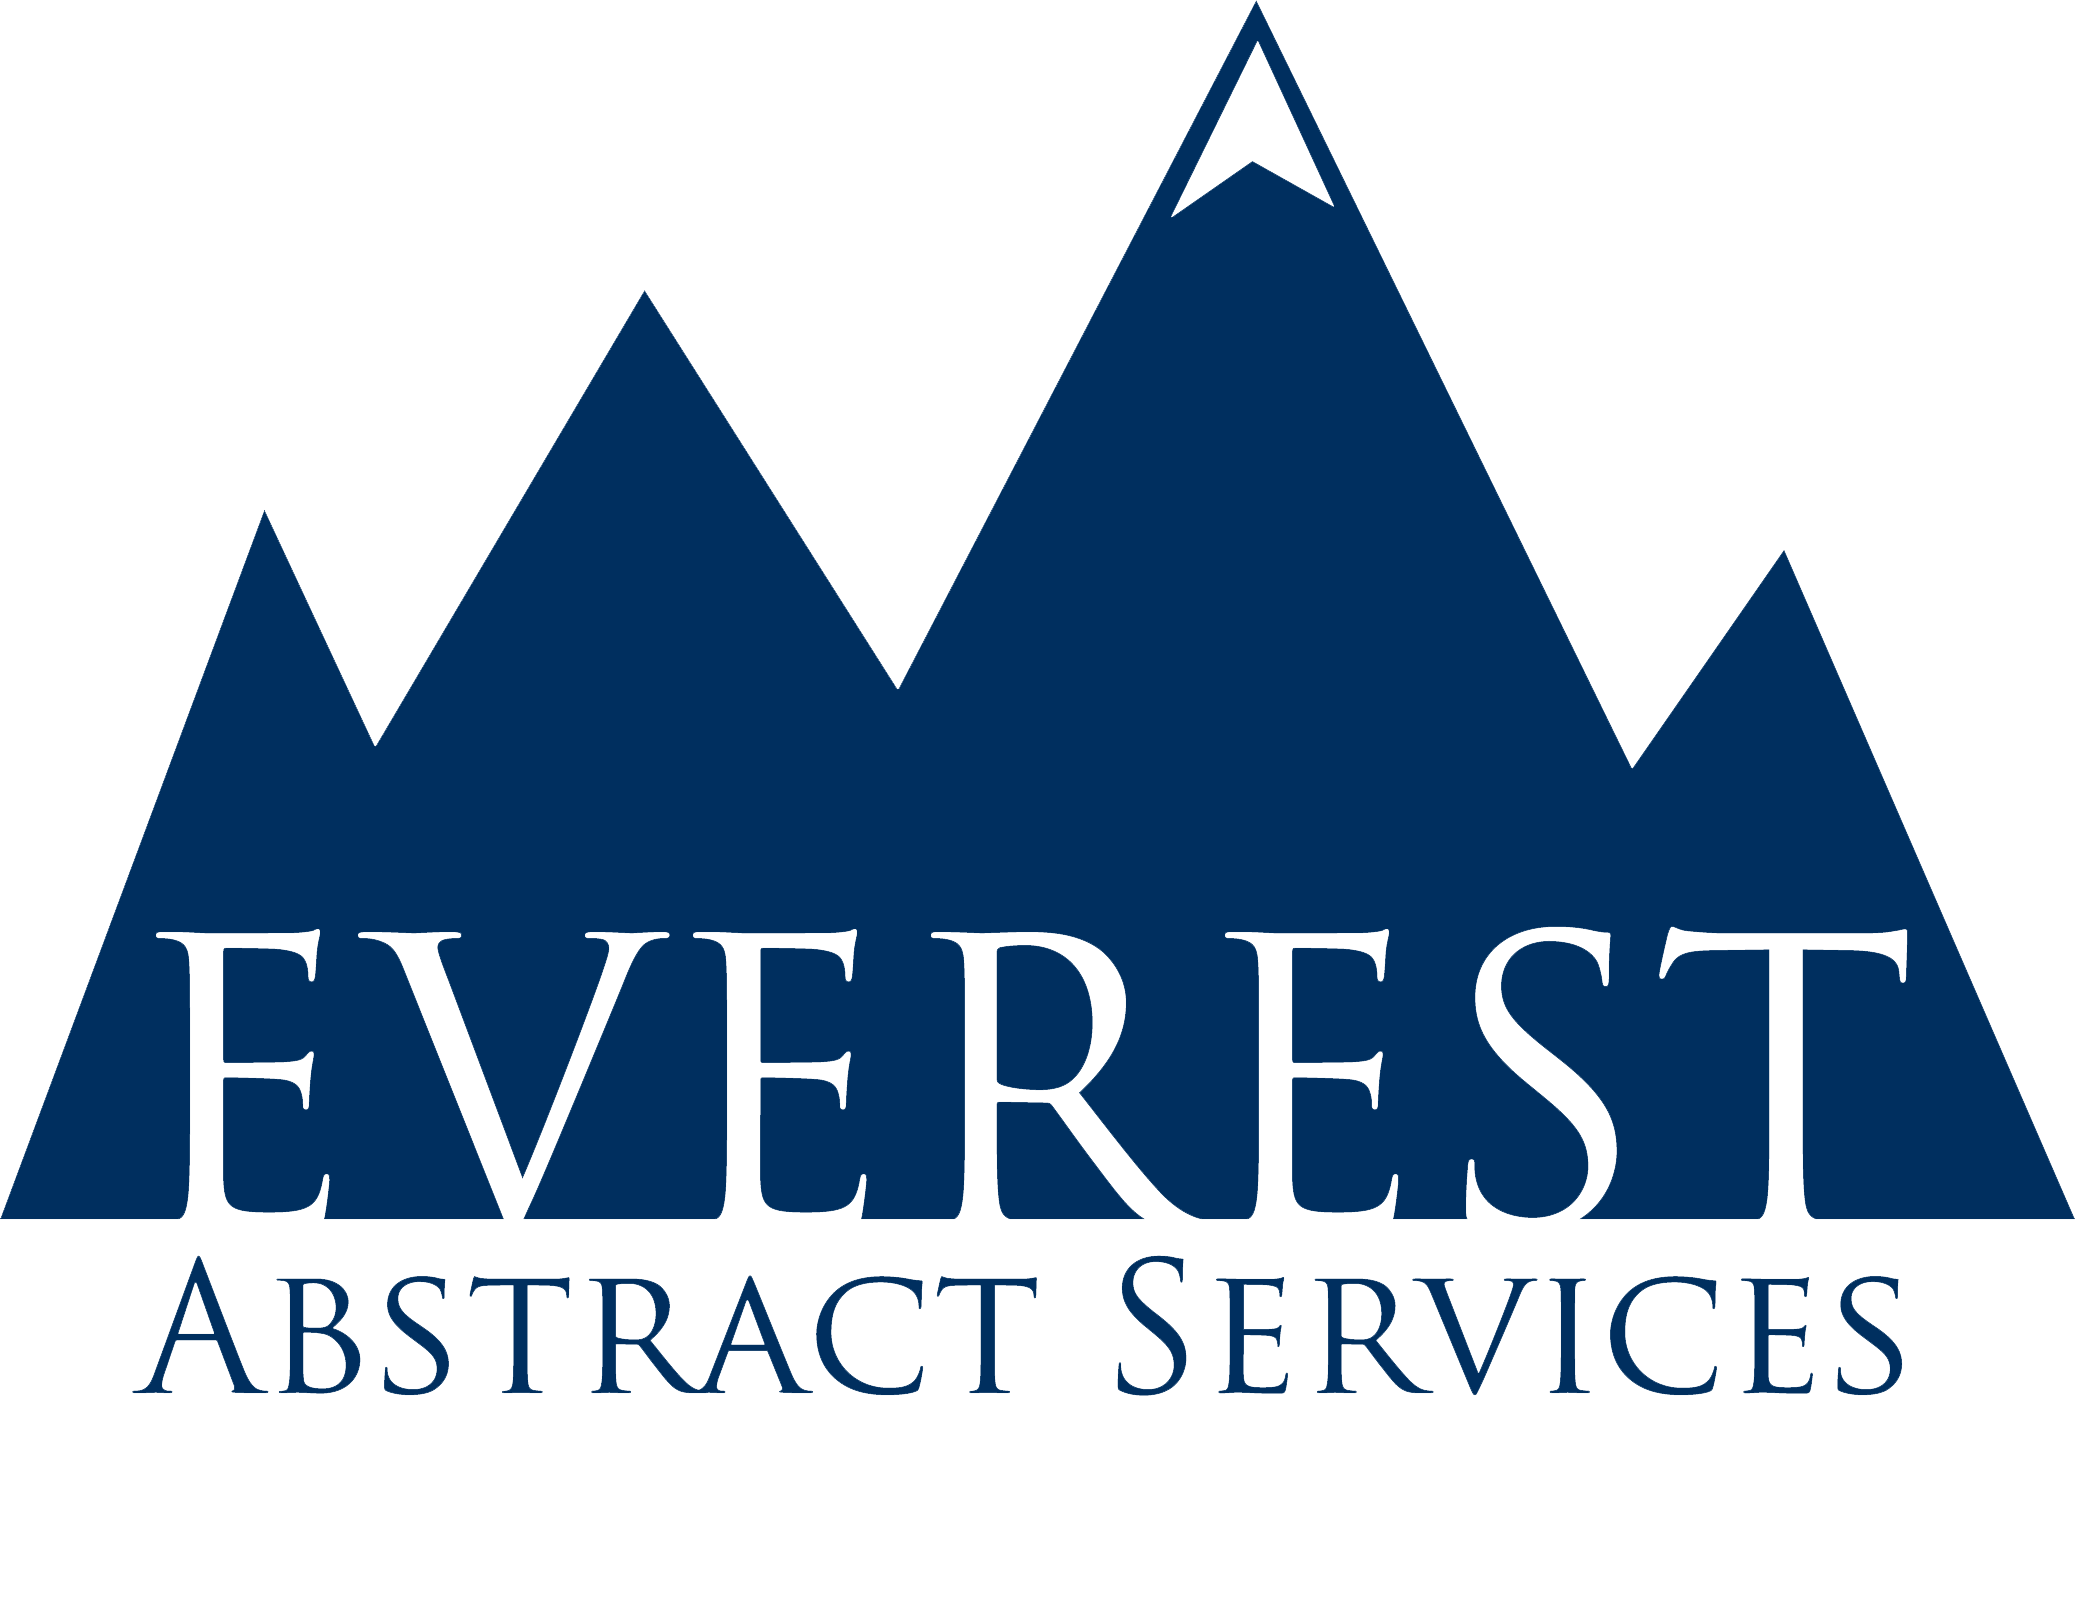 Everest Image PNG Image